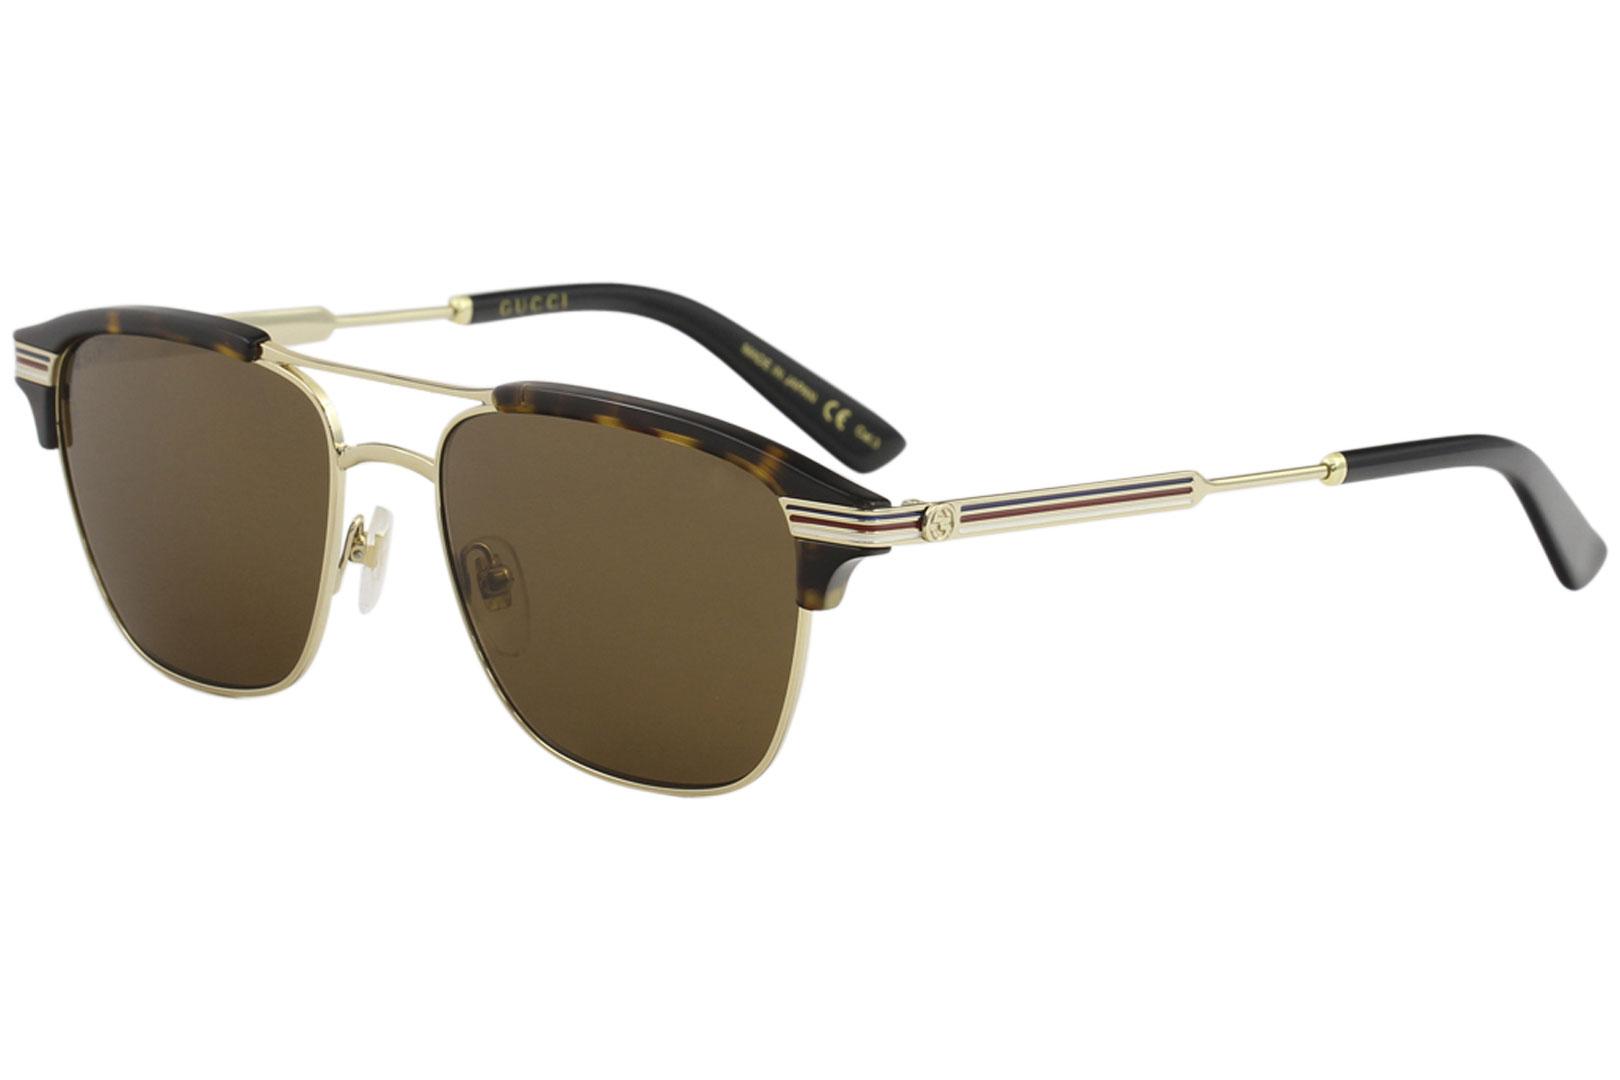 Gucci Men's GG0241S GG/0241/S Fashion Pilot Sunglasses - Gold/Brown Mirrored   003 - Lens 54 Bridge 17 Temple 145mm